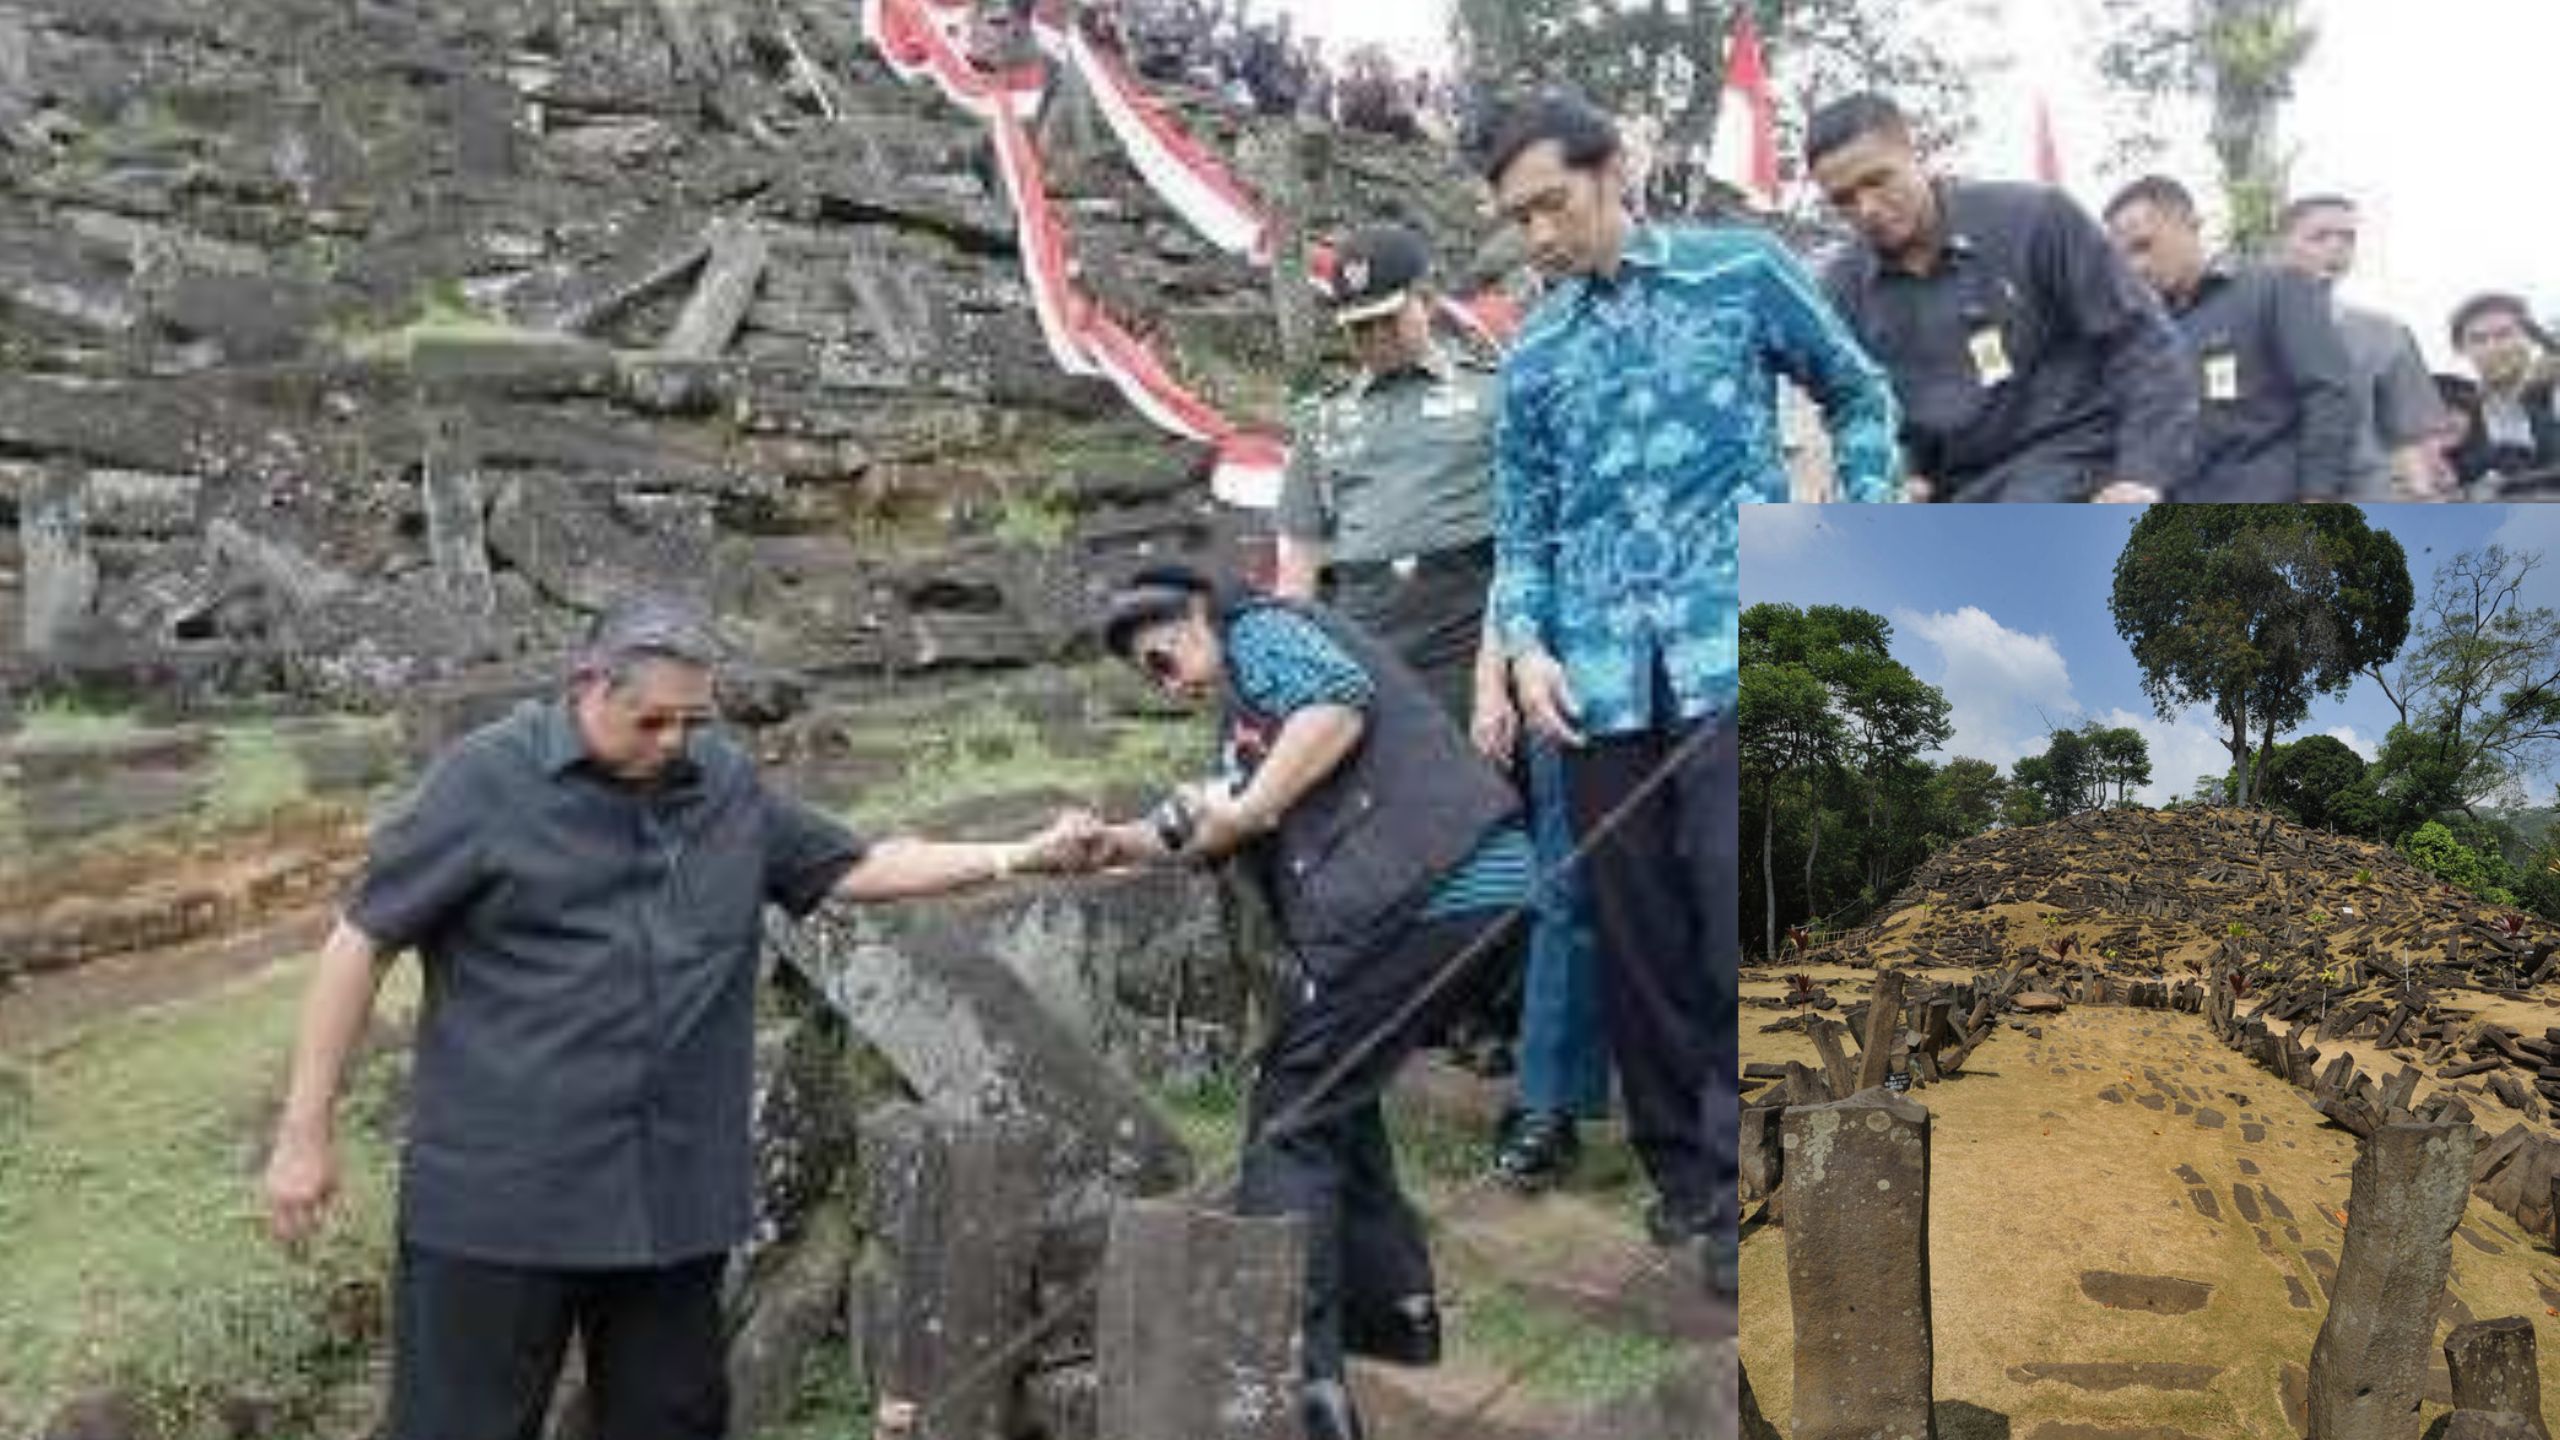 Situs Gunung Padang, Kebudayaan Megalitikum, dibangun Zaman Nabi Ibrahim, Sejarah Yang Positif dan Membanggaka